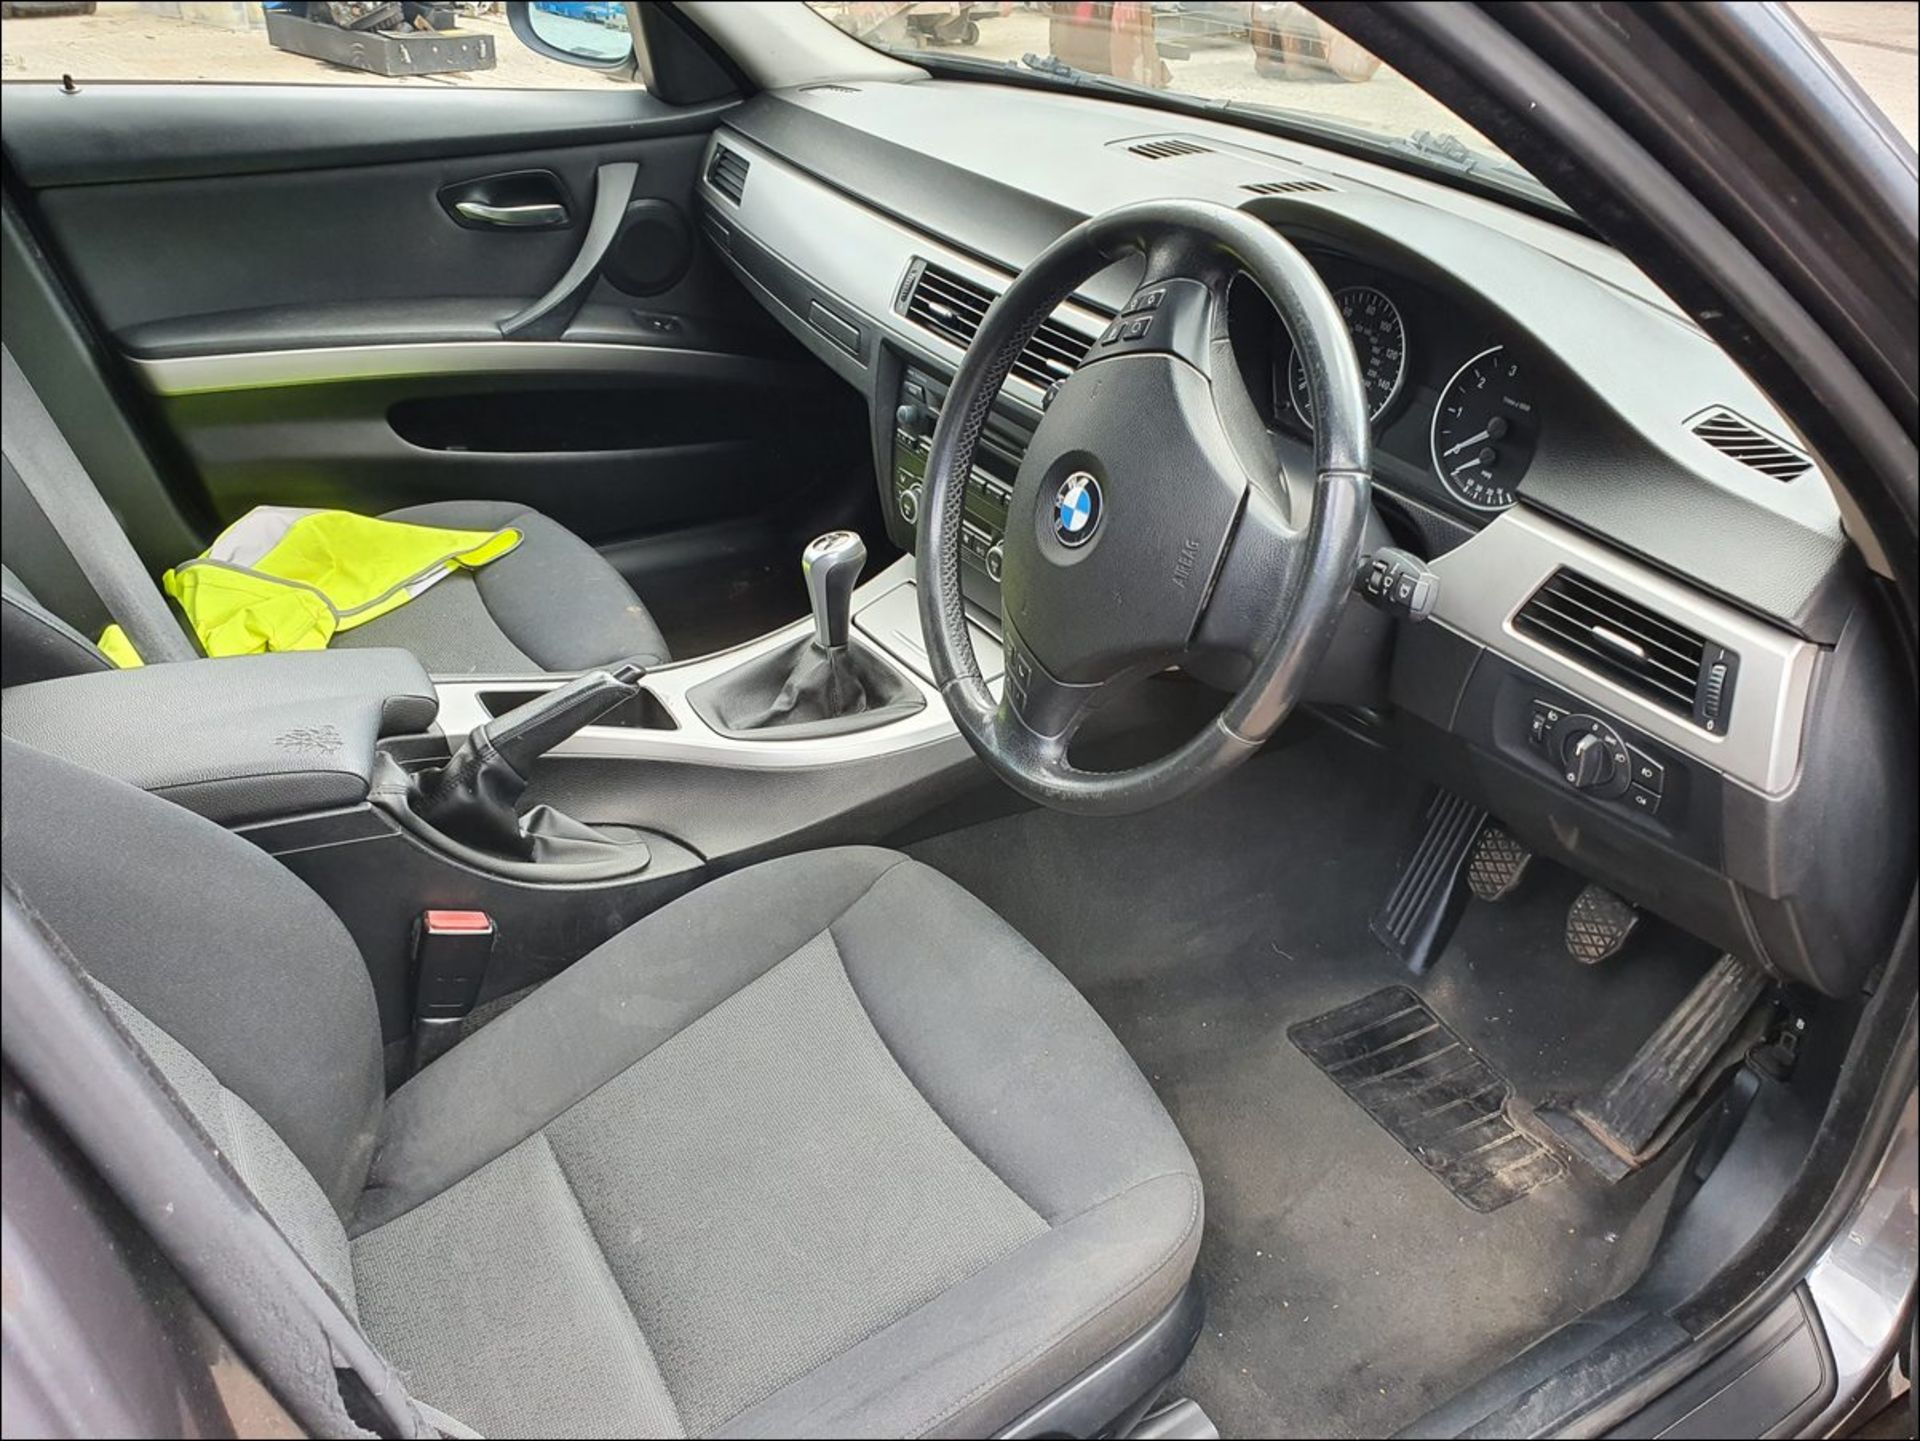 07/07 BMW 318I SE - 1995cc 4dr Saloon (Grey, 175k) - Image 5 of 10